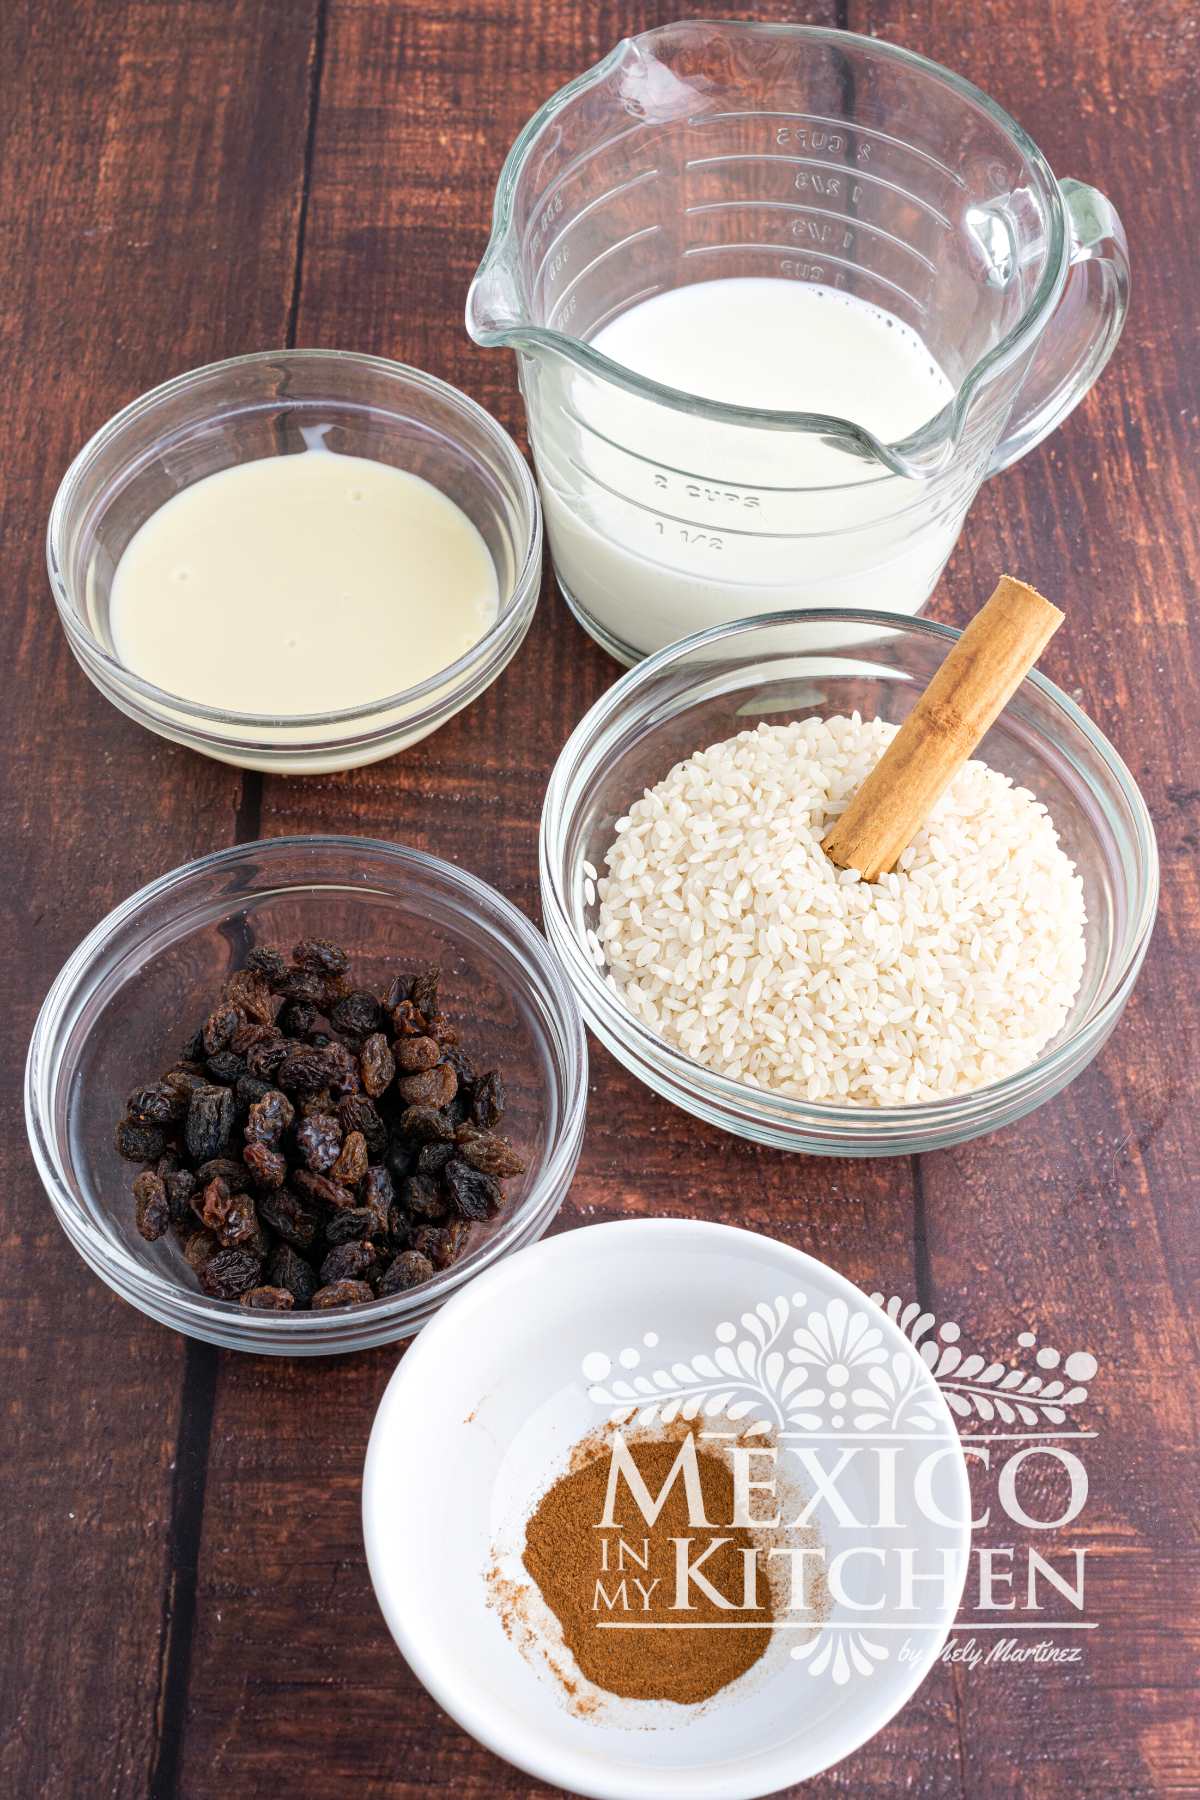 Ingredients, like milk, sweetened condensed milk, raisins, and cinnamon displayed in a table.